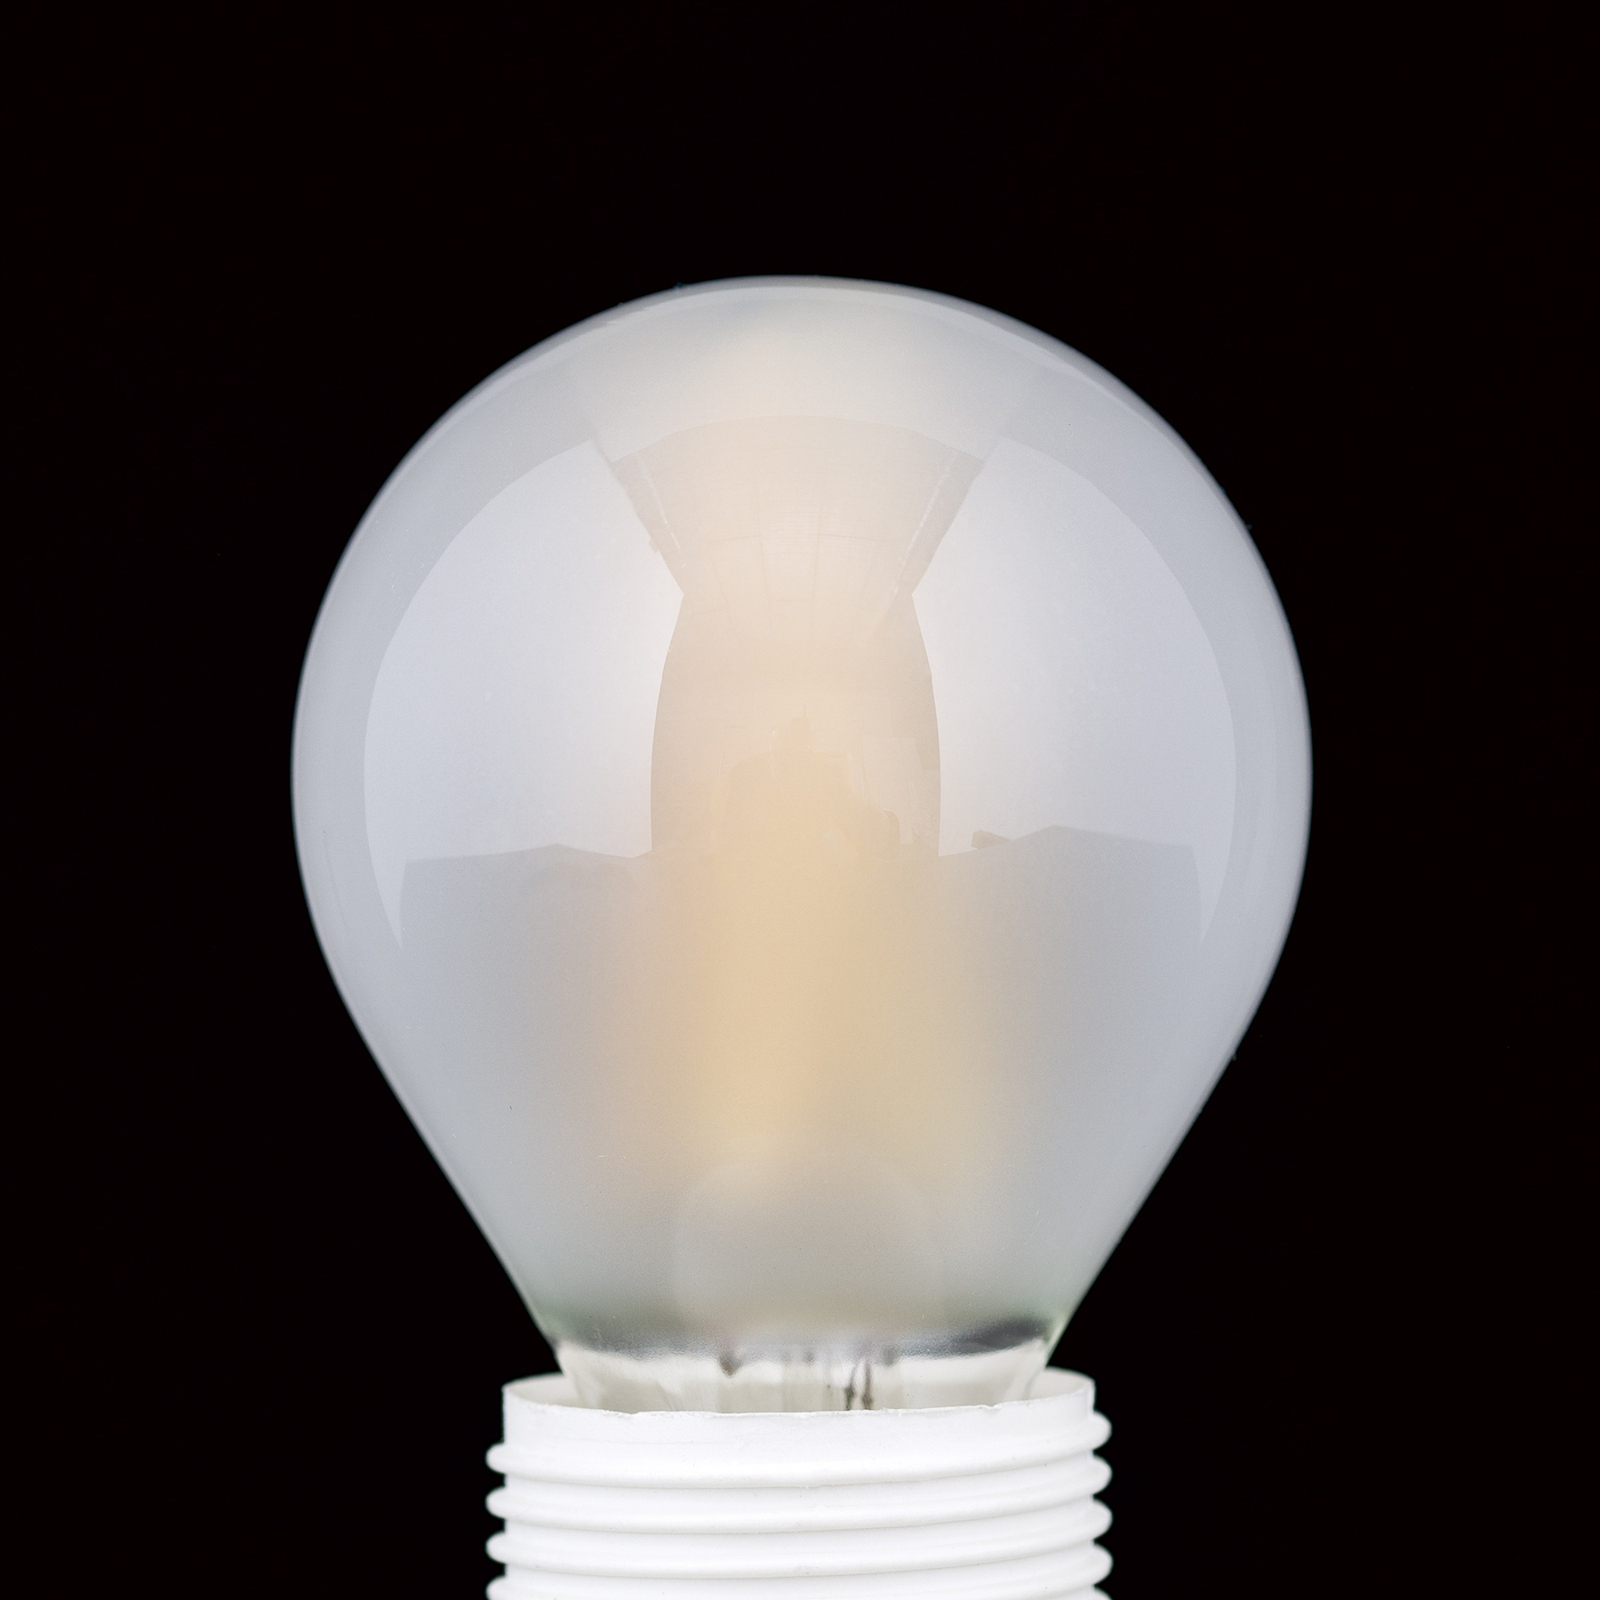 Žárovka LED, E27 G45, matná, 6W, 827, 720 lm, stmívatelná